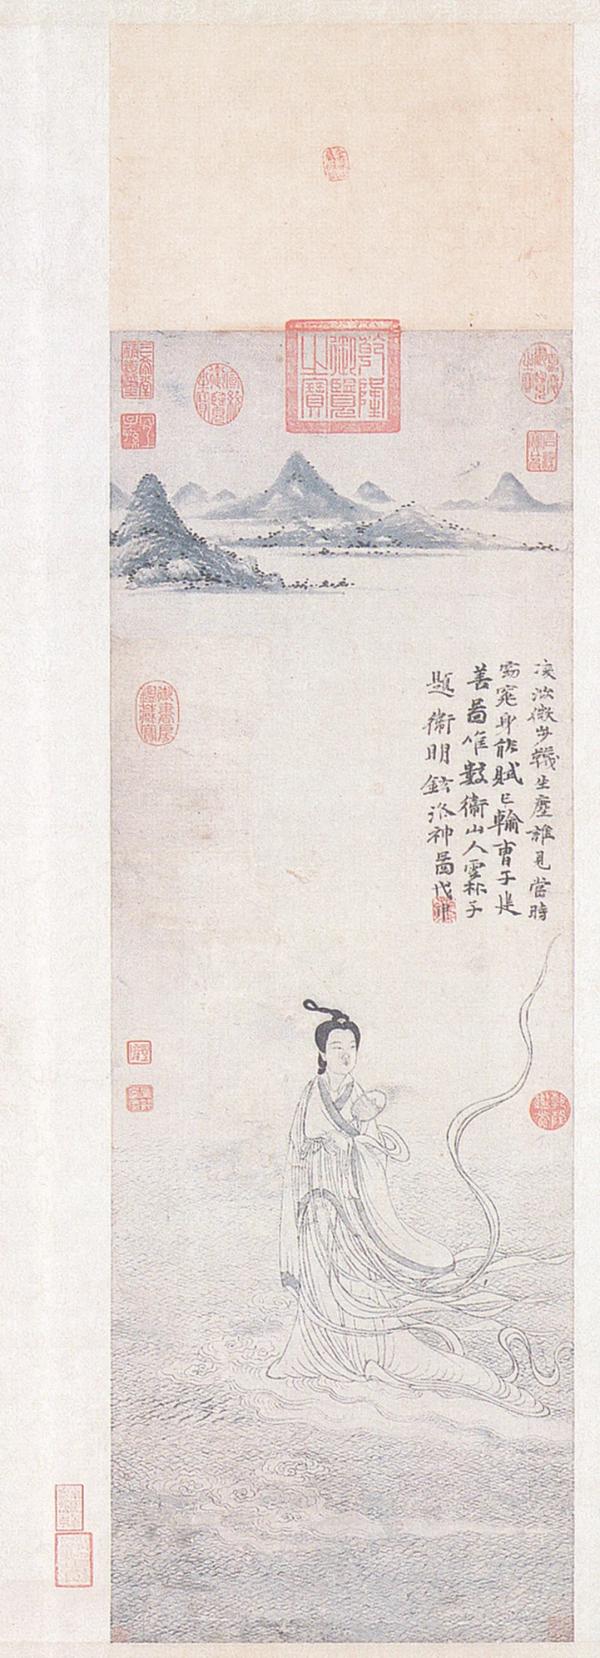 图八卫九鼎《洛神图》轴台北故宫博物院藏